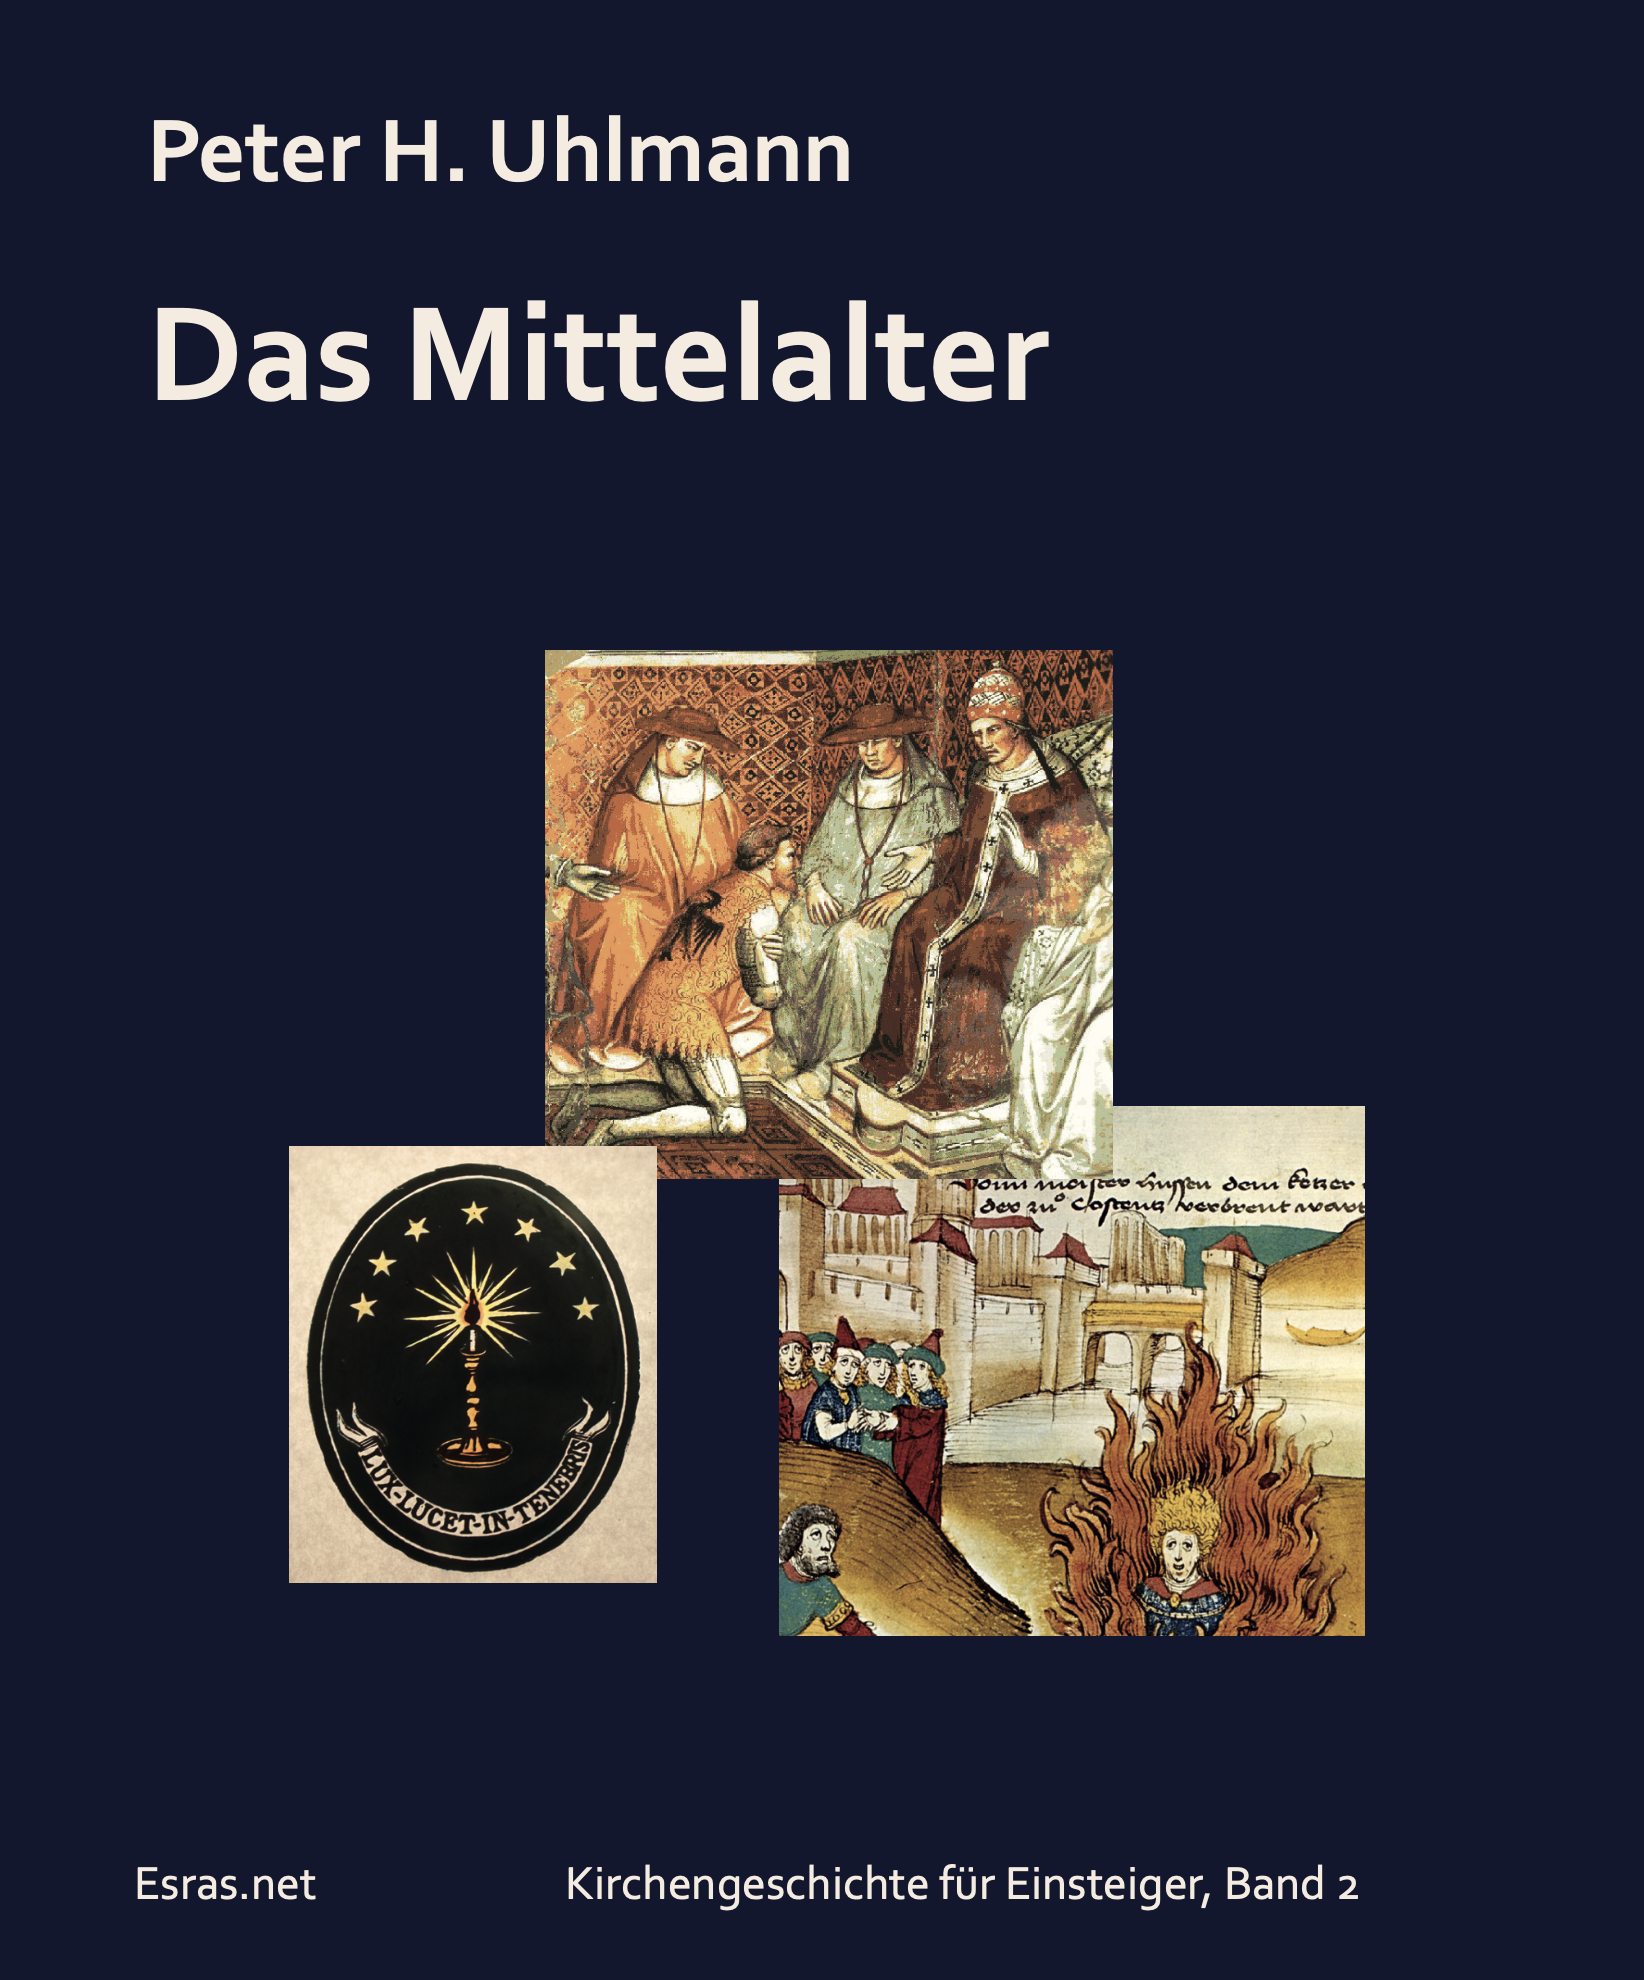 Cover von dem Buch: Das Mittelalter